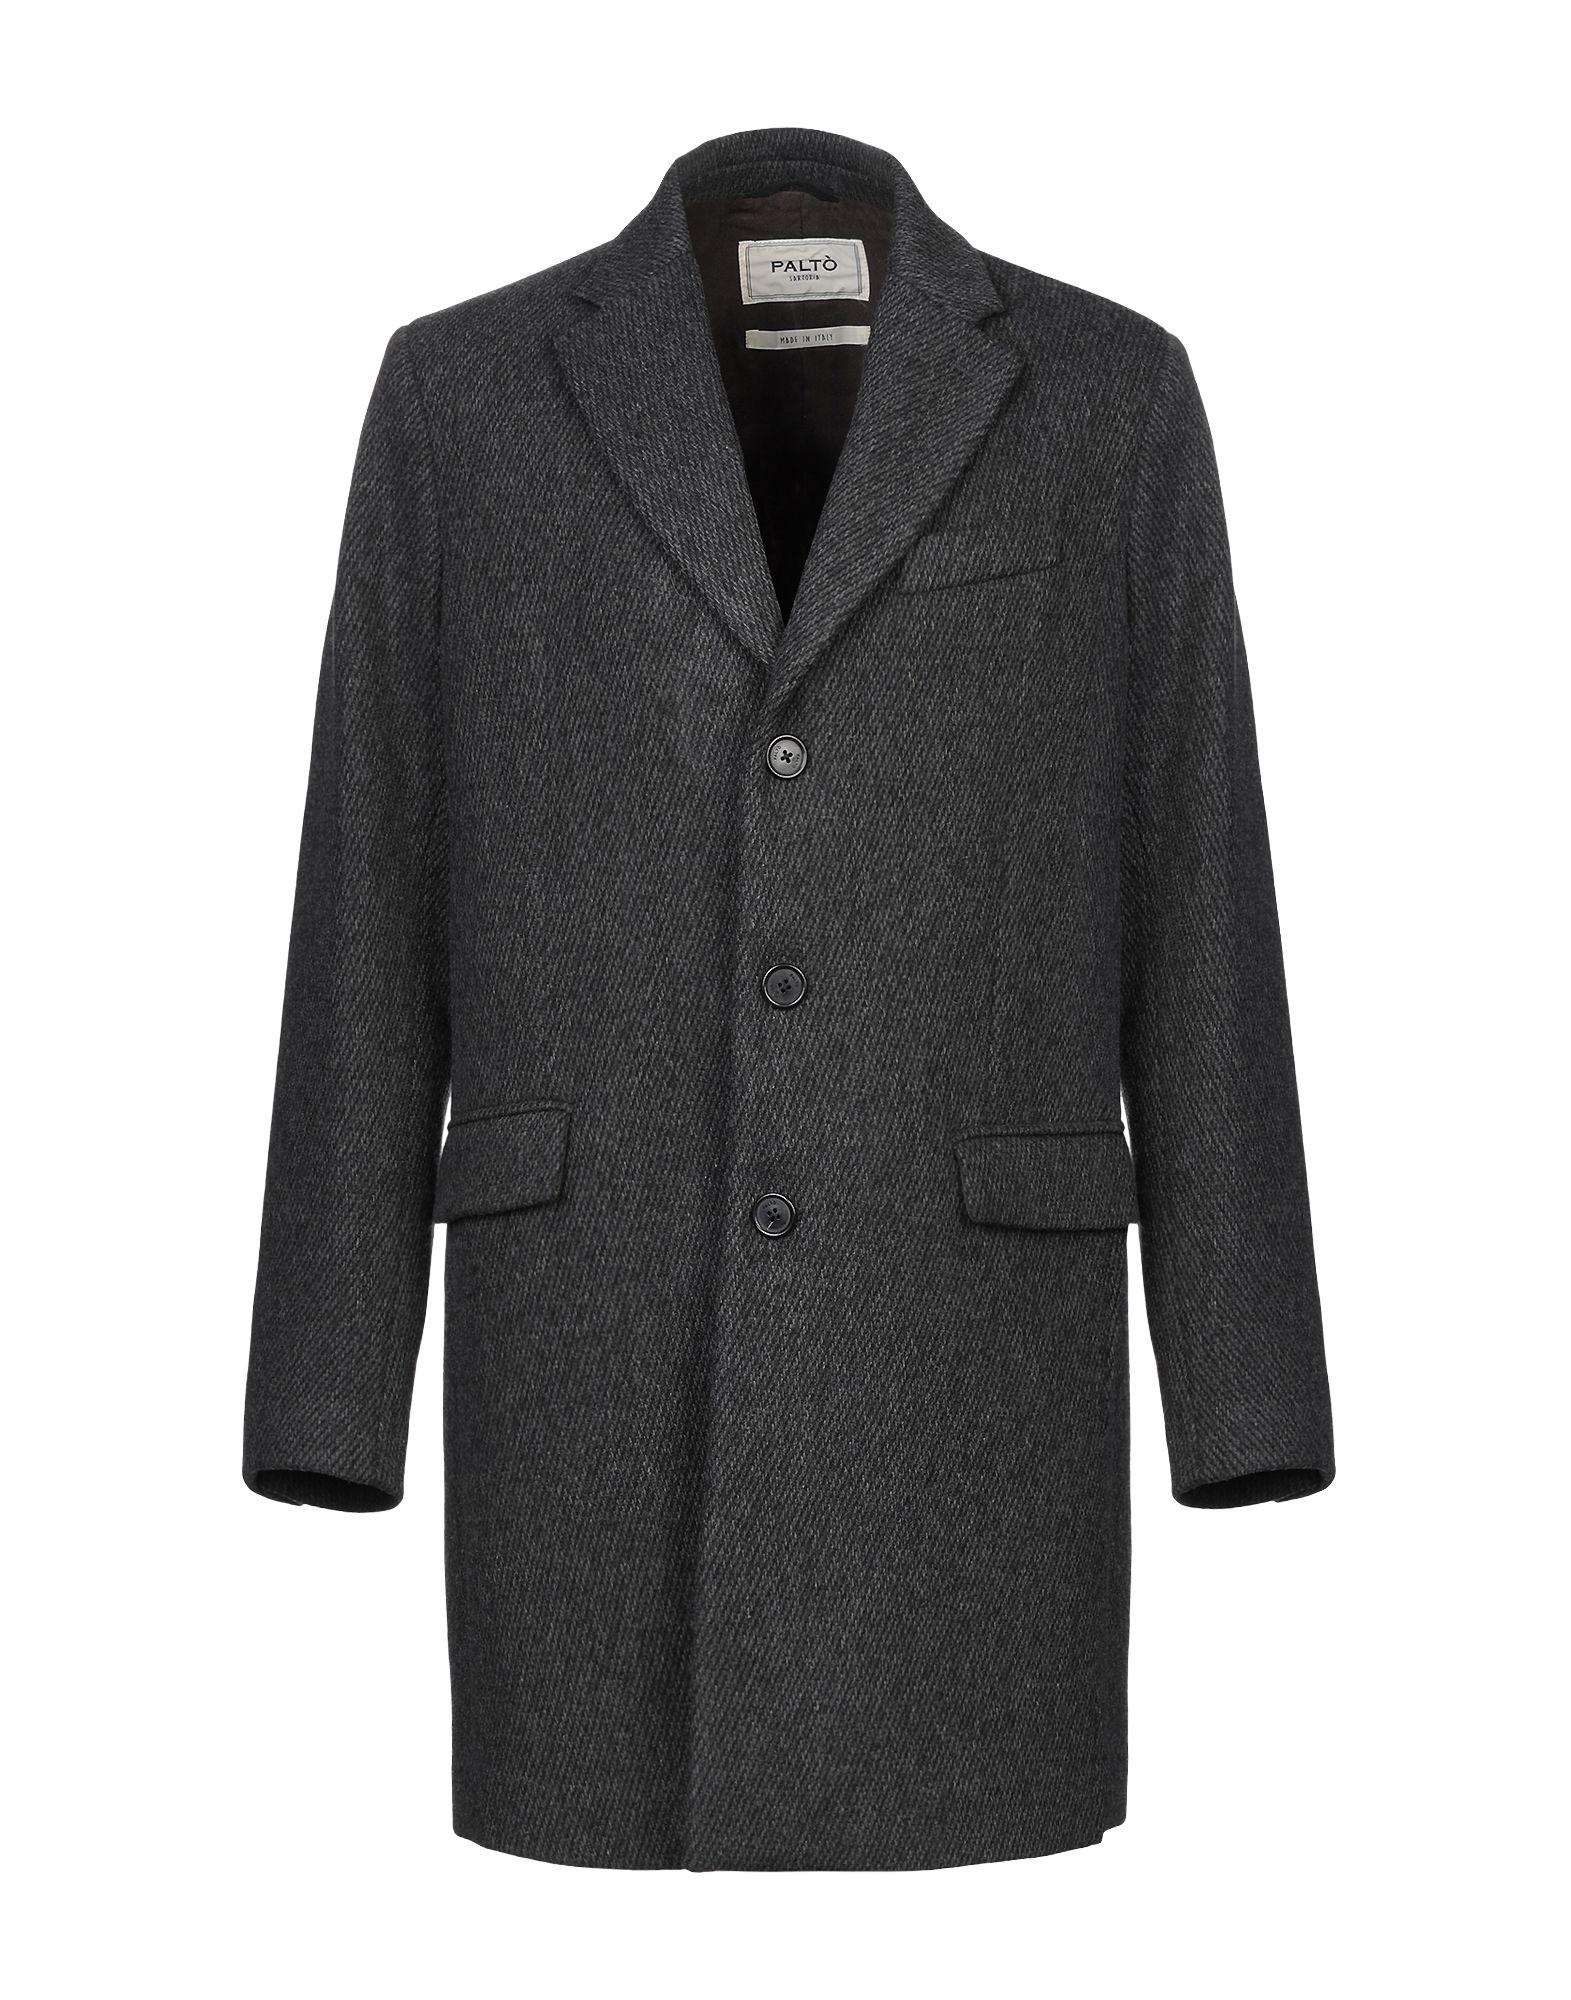 Paltò Wool Coat in Lead (Gray) for Men - Lyst